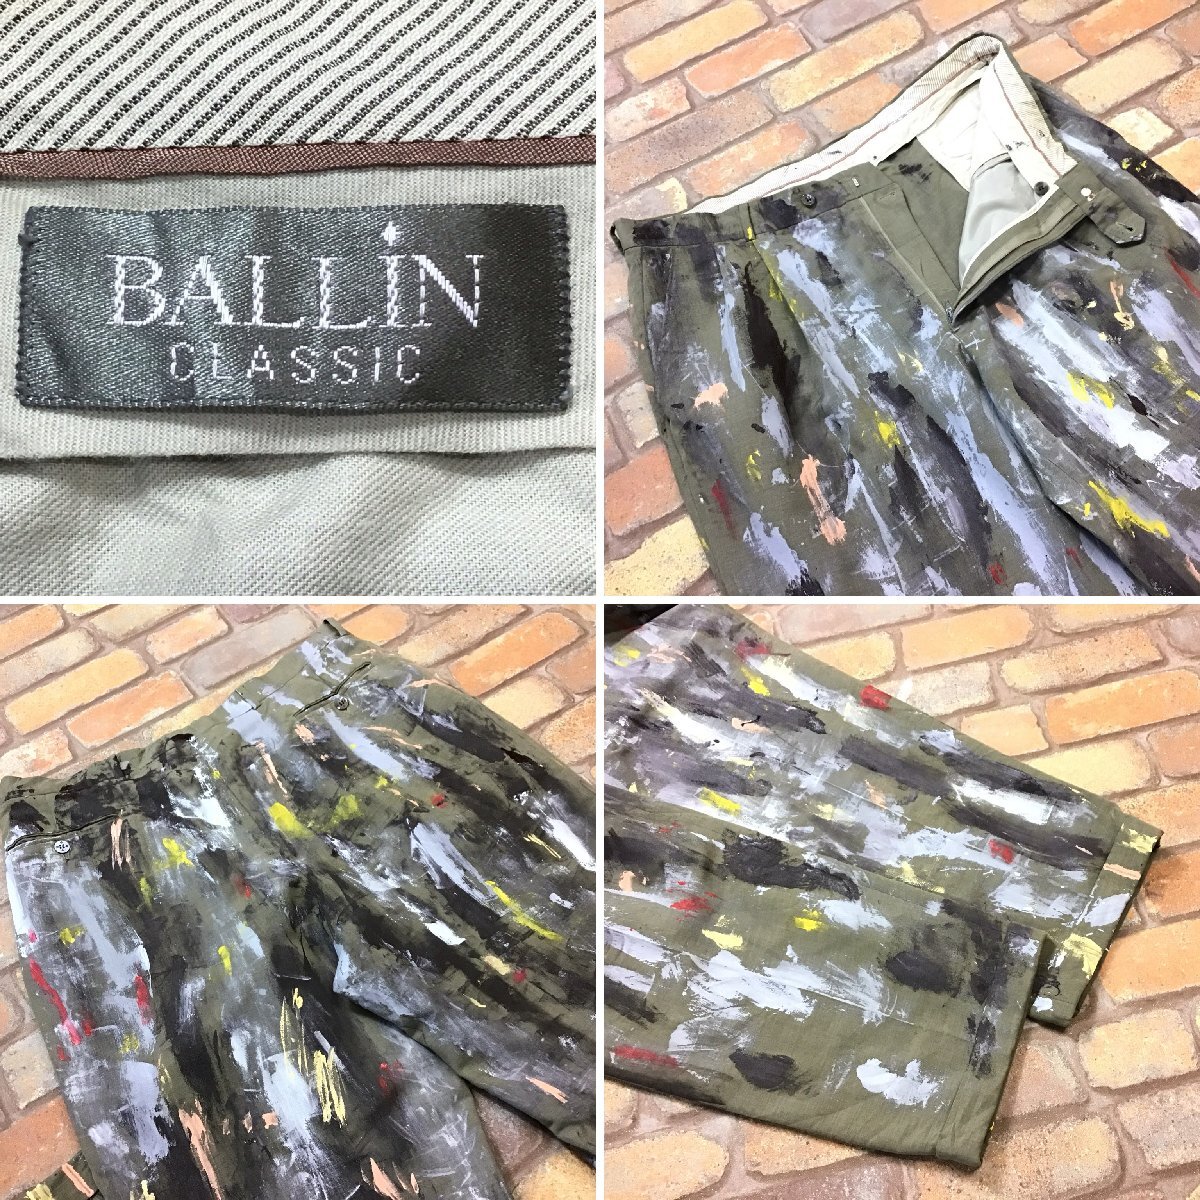 RE1-012【Painting Pants】USA古着【BALLIN】ペンキ汚れ ワイド ボロパンツ【W38 メンズ XL】ペインターパンツ ワーク ダボパン VINTAGE_画像4